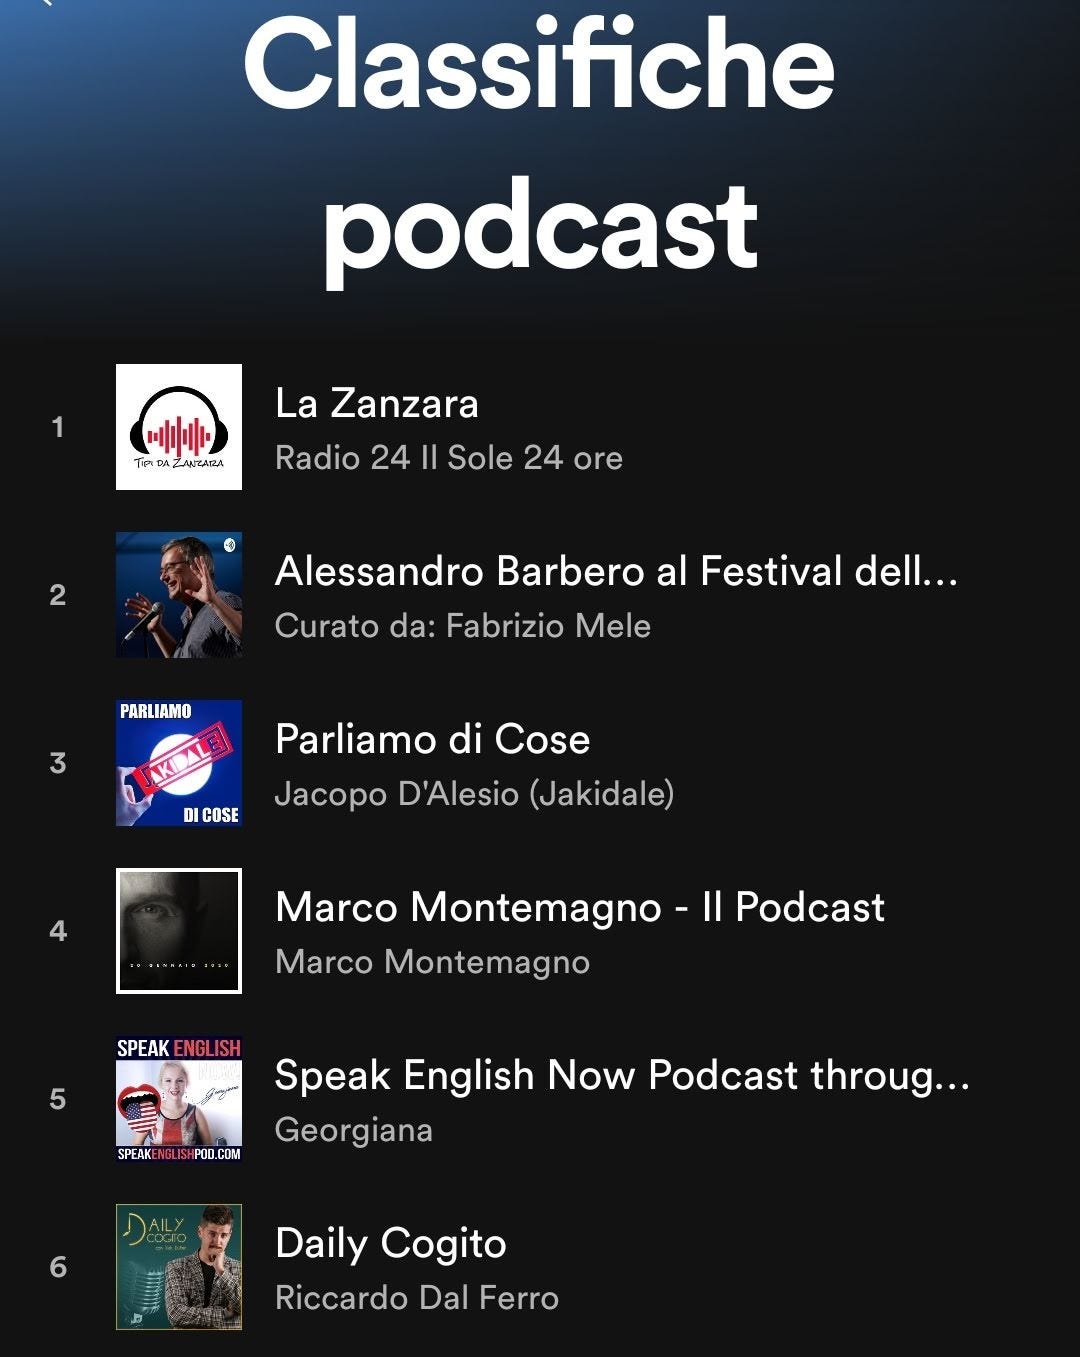 Un podcast da zero a top 3 di Spotify